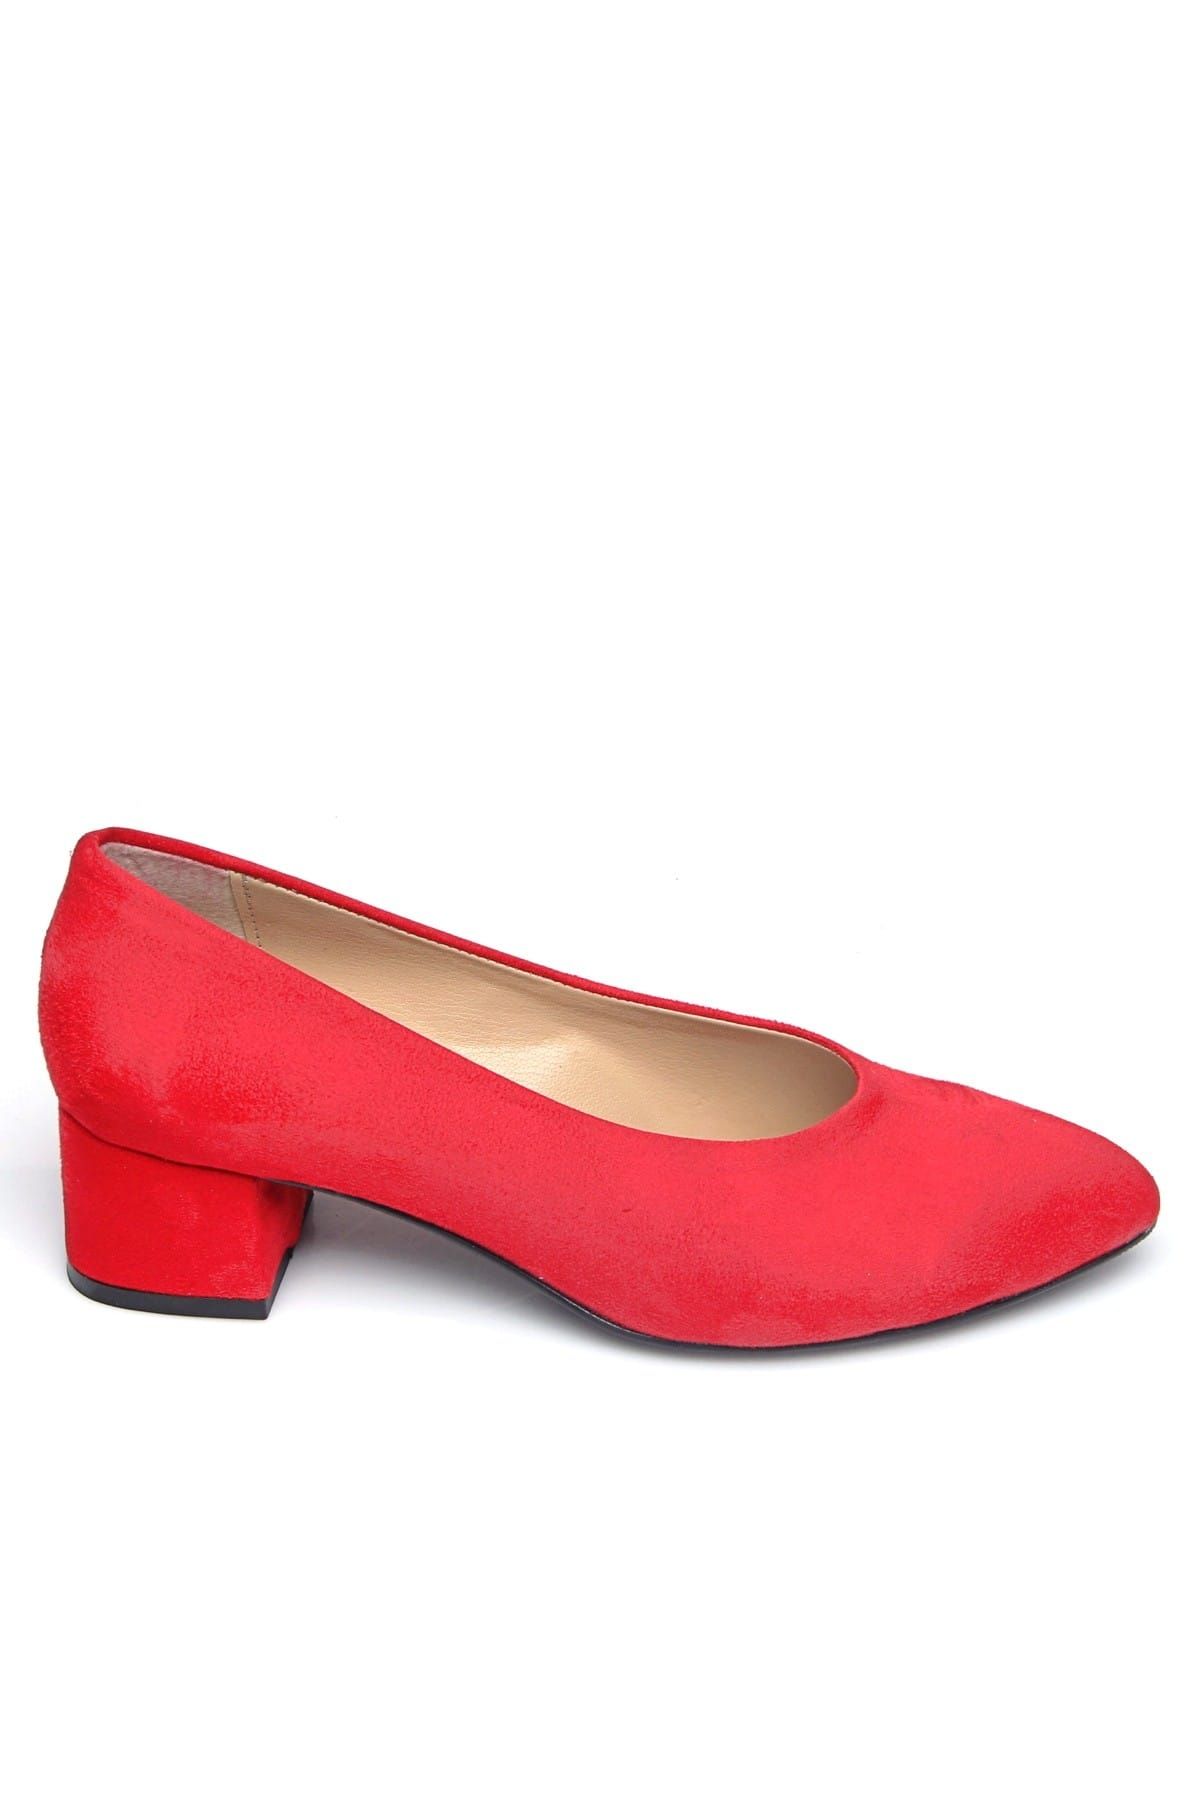 Shoes Time Kırmızı Kadın Topuklu Ayakkabı 19Y 2202